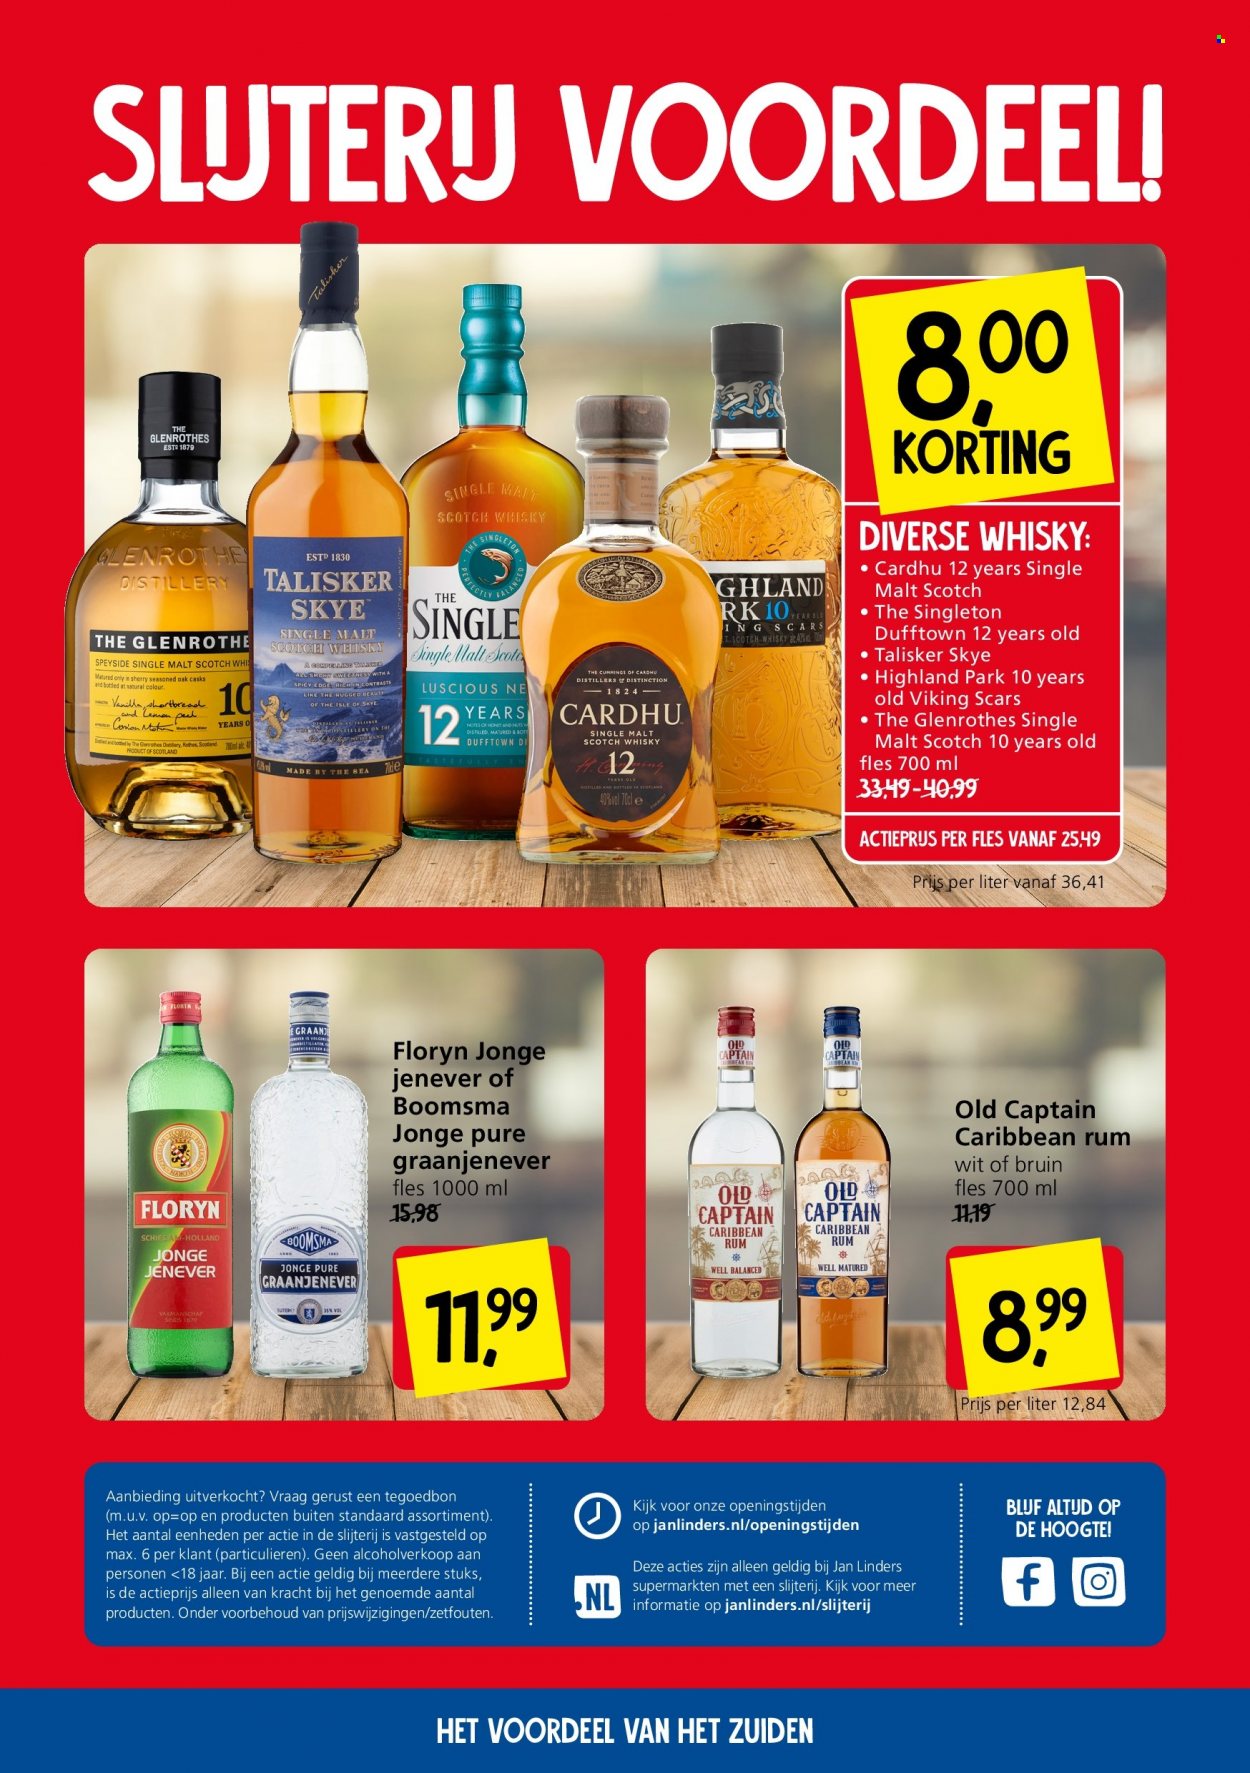 thumbnail - Jan Linders-aanbieding - 18-10-2021 - 24-10-2021 -  producten in de aanbieding - rum, scotch whisky, Single Malt, whisky, Jenever, Talisker, Cardhu. Pagina 2.